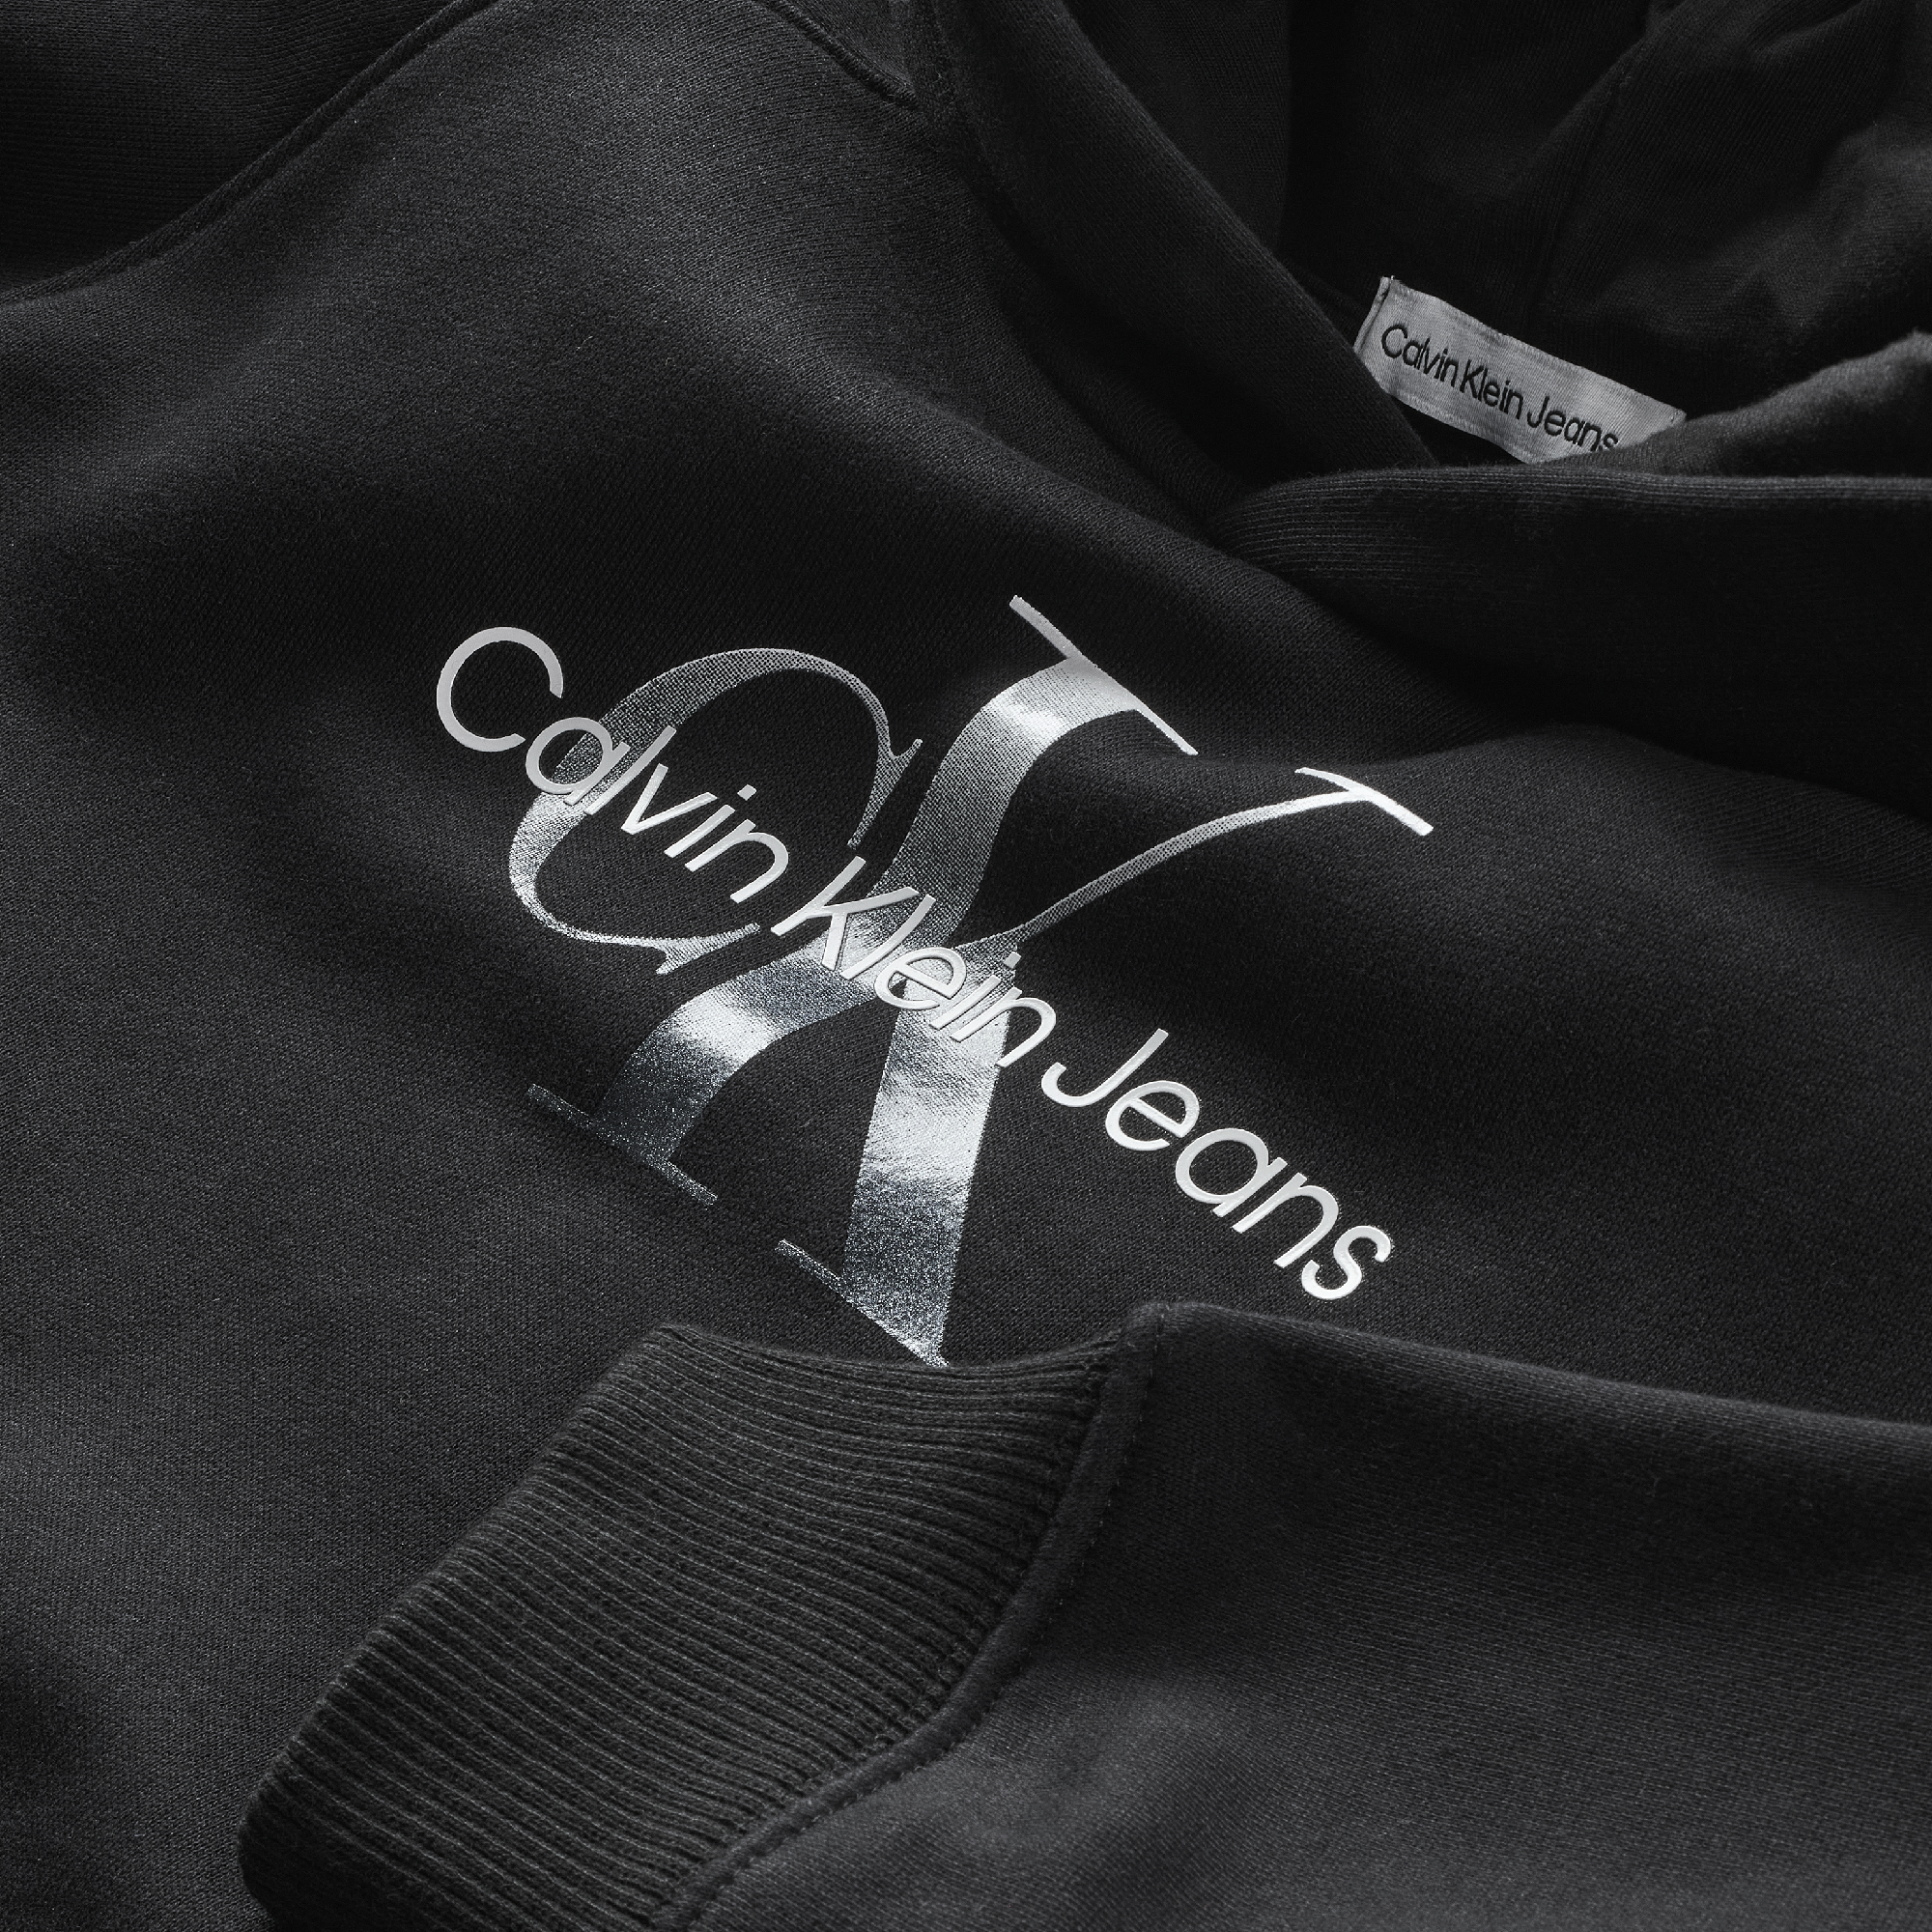 Meisjes GRADIENT MONOGRAM HOODIE van Calvin Klein in de kleur Ck Black in maat 176.